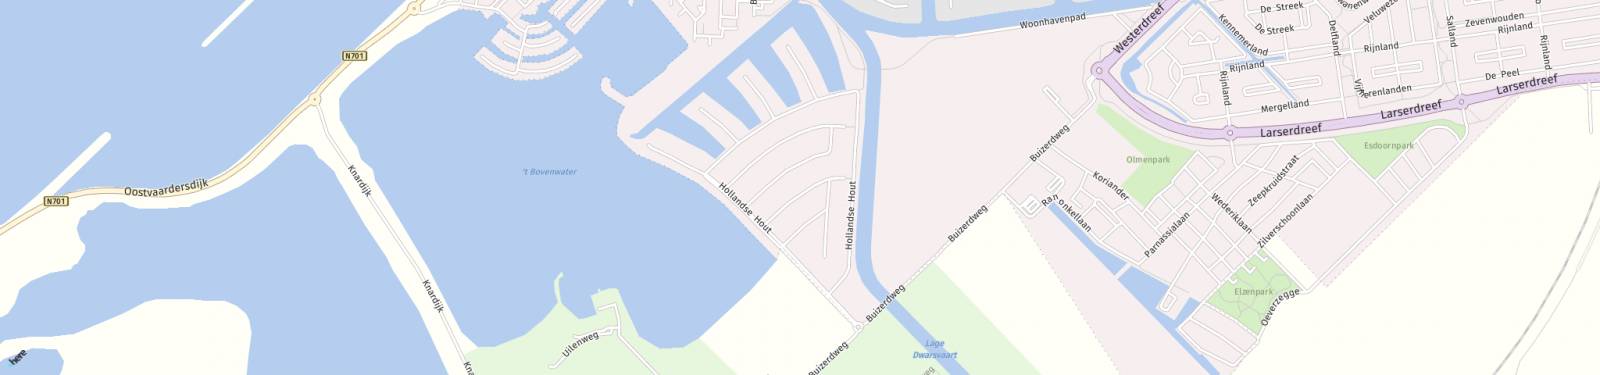 Kaart met locatie Huurwoning Hollandse Hout